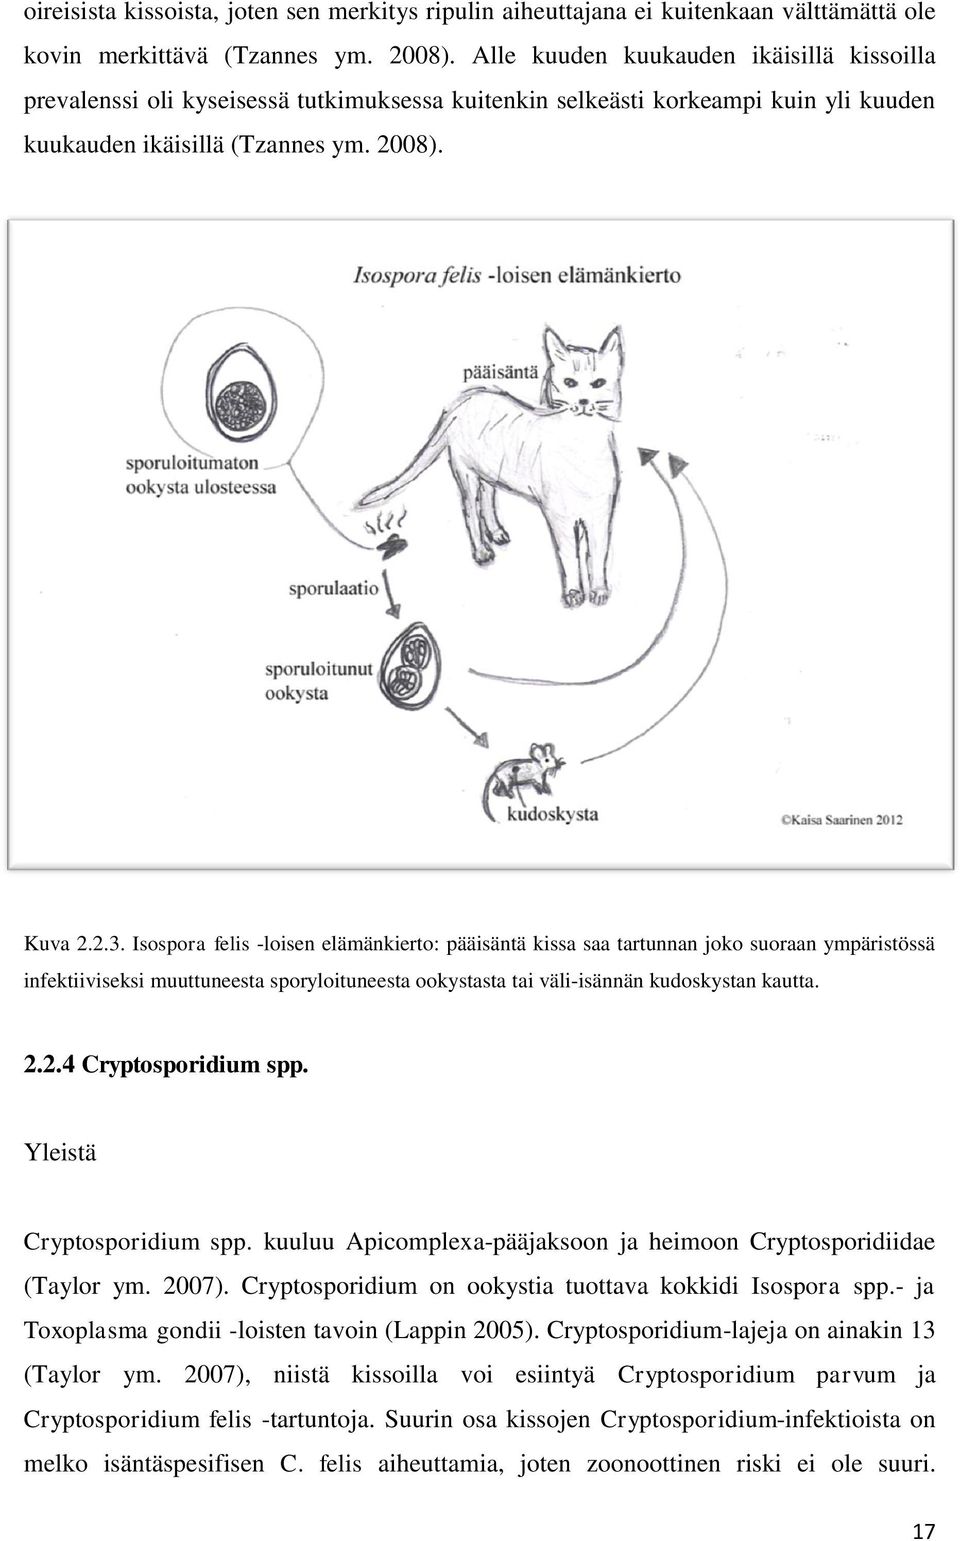 Isospora felis -loisen elämänkierto: pääisäntä kissa saa tartunnan joko suoraan ympäristössä infektiiviseksi muuttuneesta sporyloituneesta ookystasta tai väli-isännän kudoskystan kautta. 2.